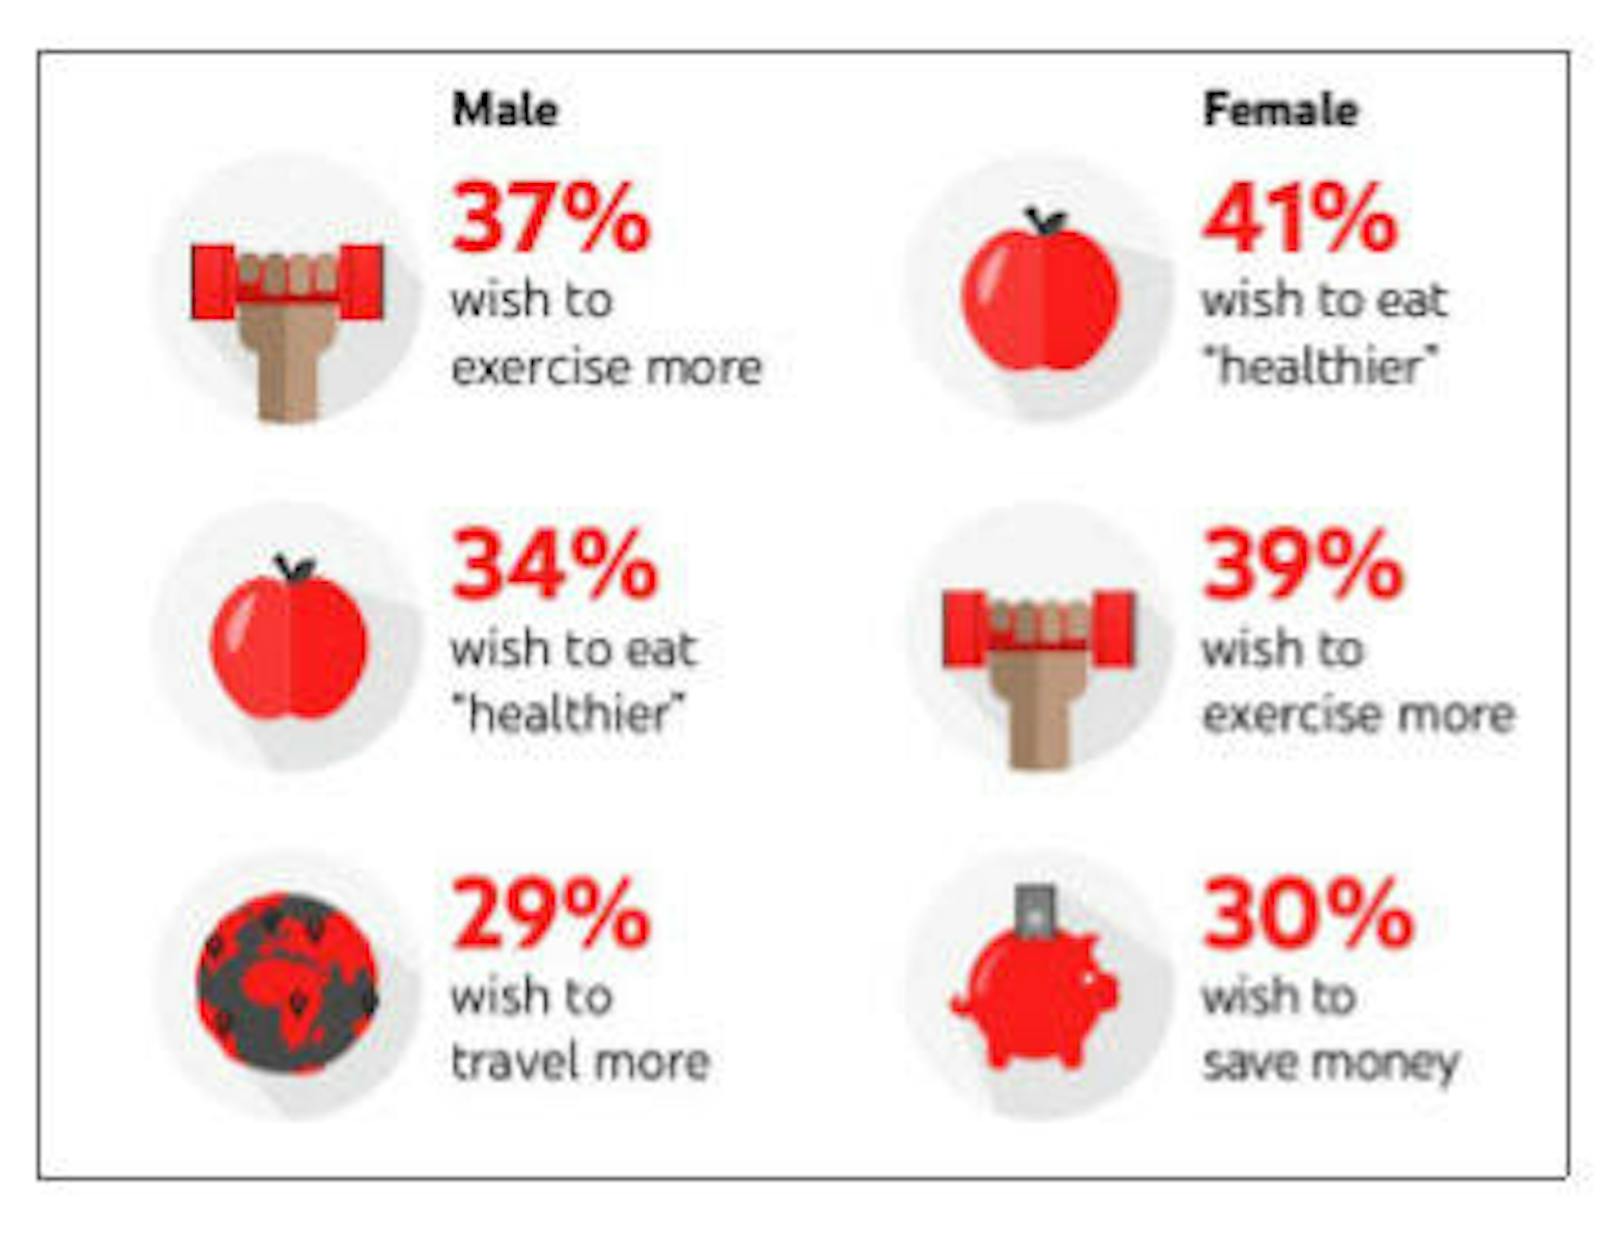 Bei den Männern steht Sport, bei Frauen die gesündere Ernährung an erster Stelle.